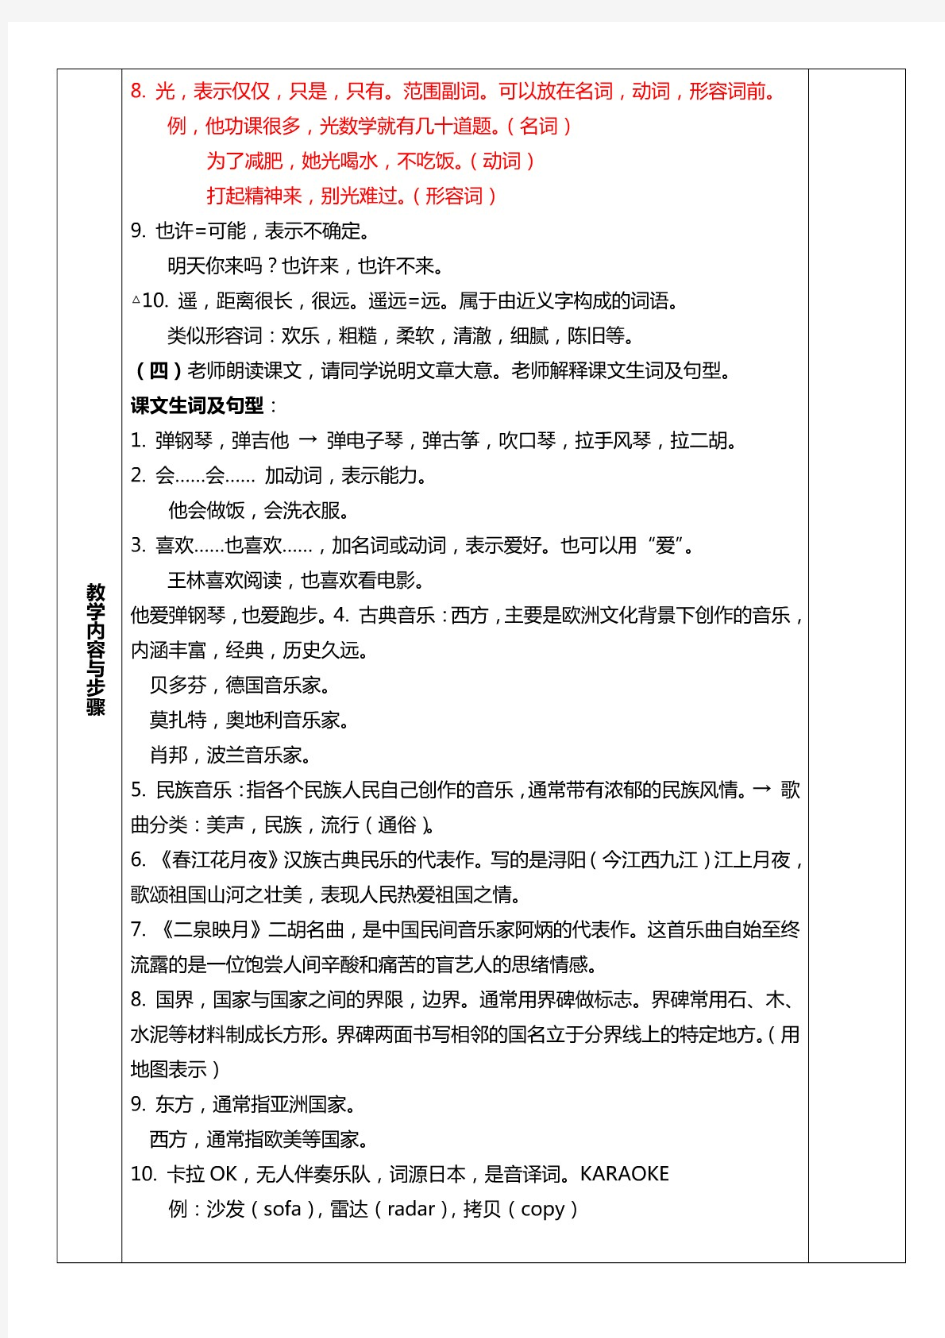 汉语阅读教程第二册第一课教案